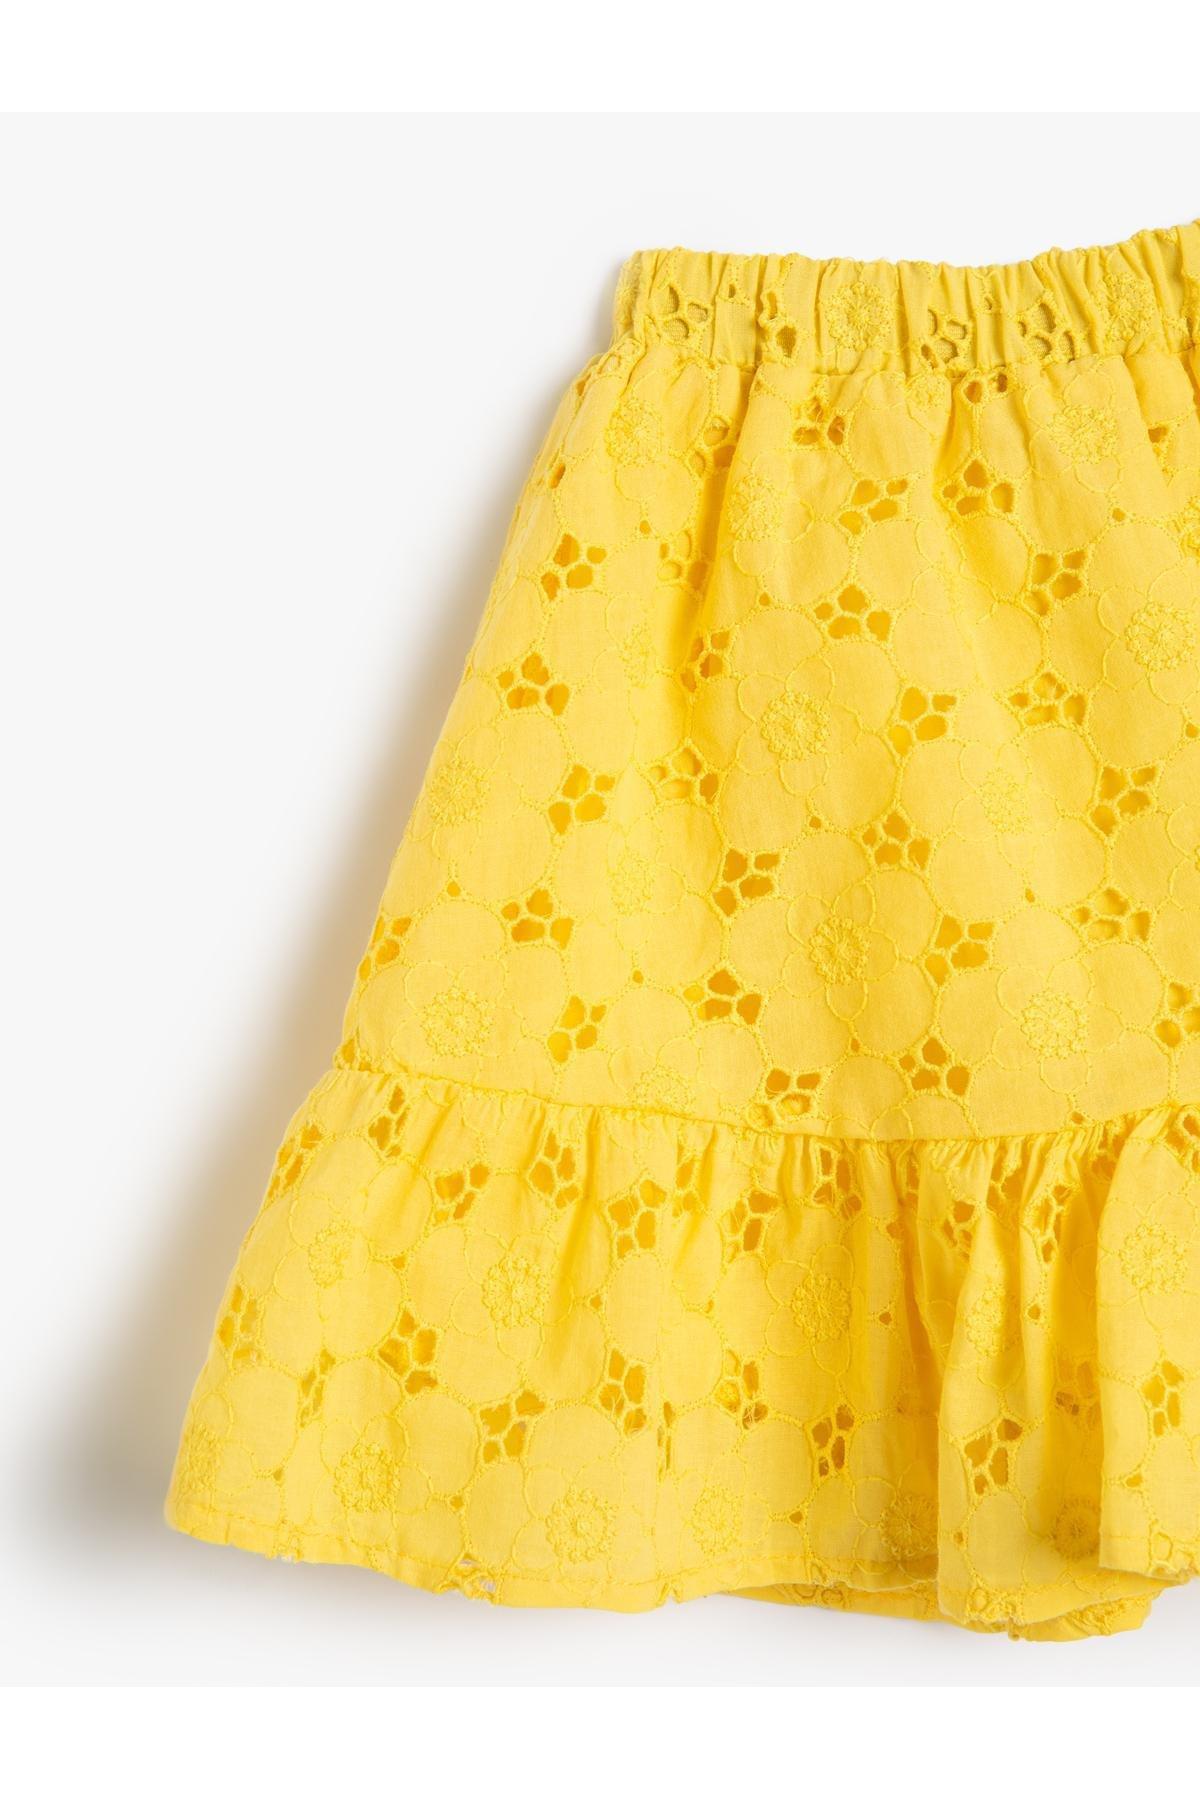 Koton - Yellow Elastic Waist Ruffled Midi Skirt